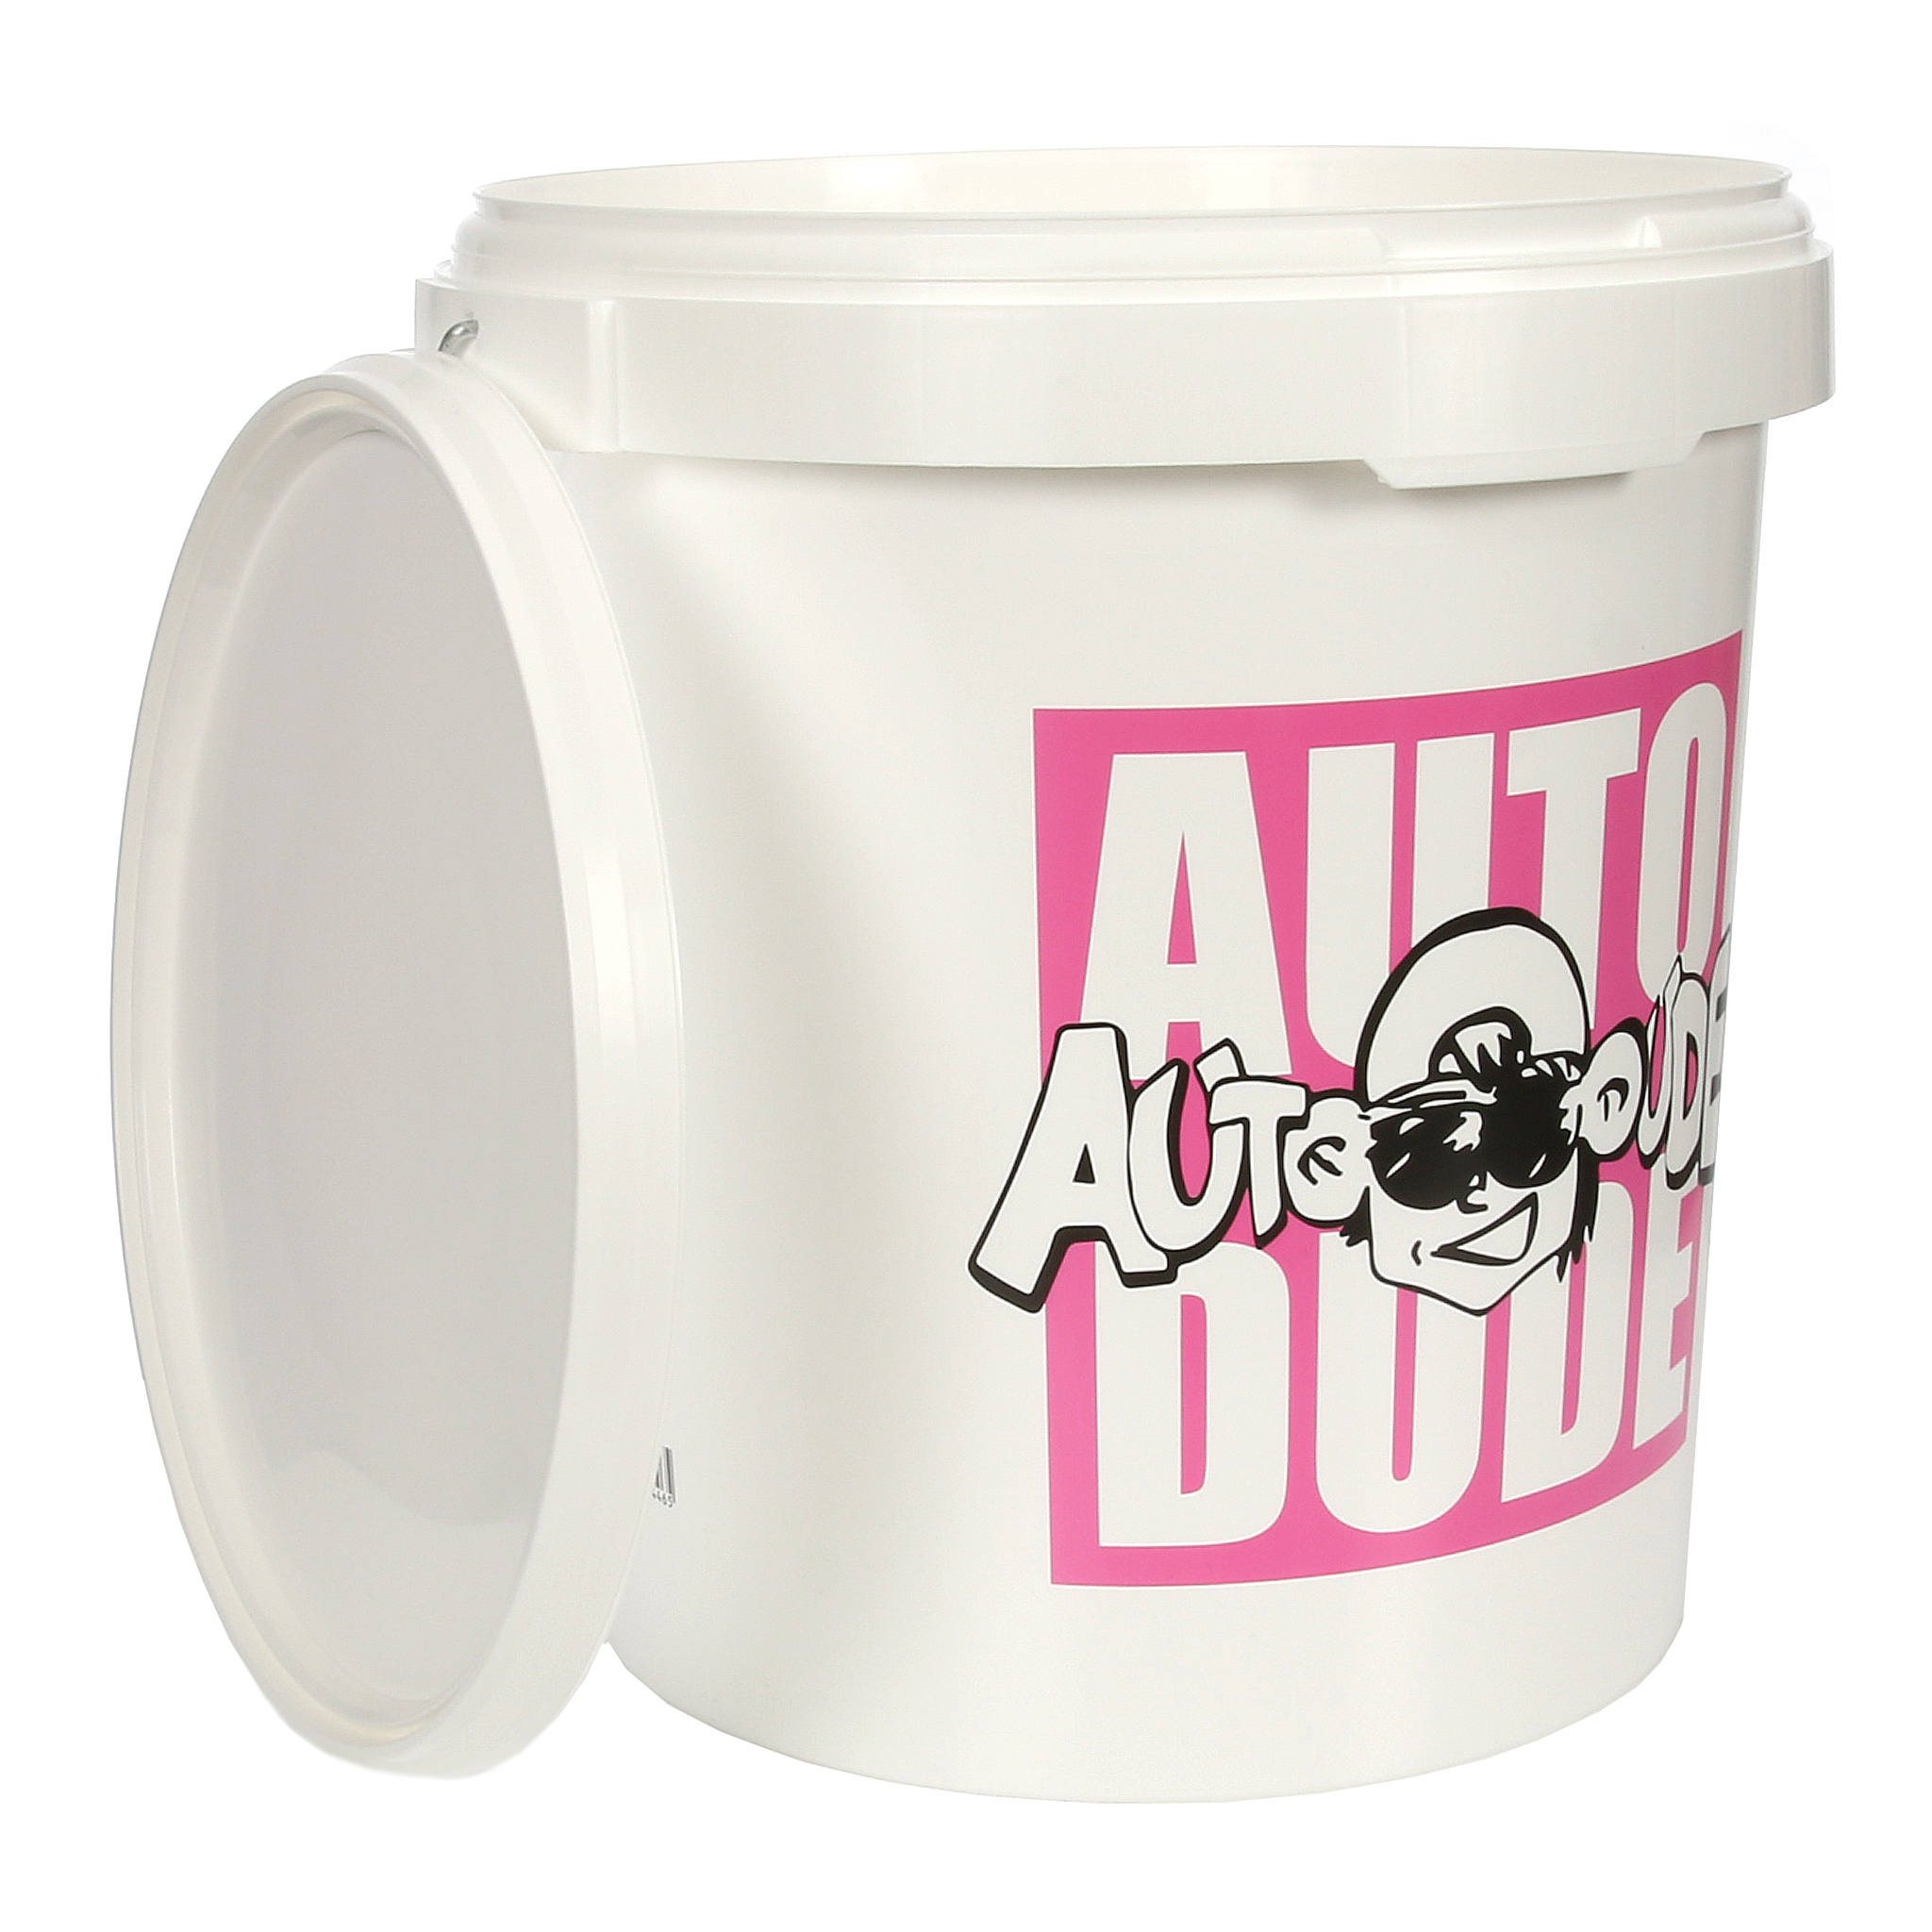 autodude_washing_bucket_2